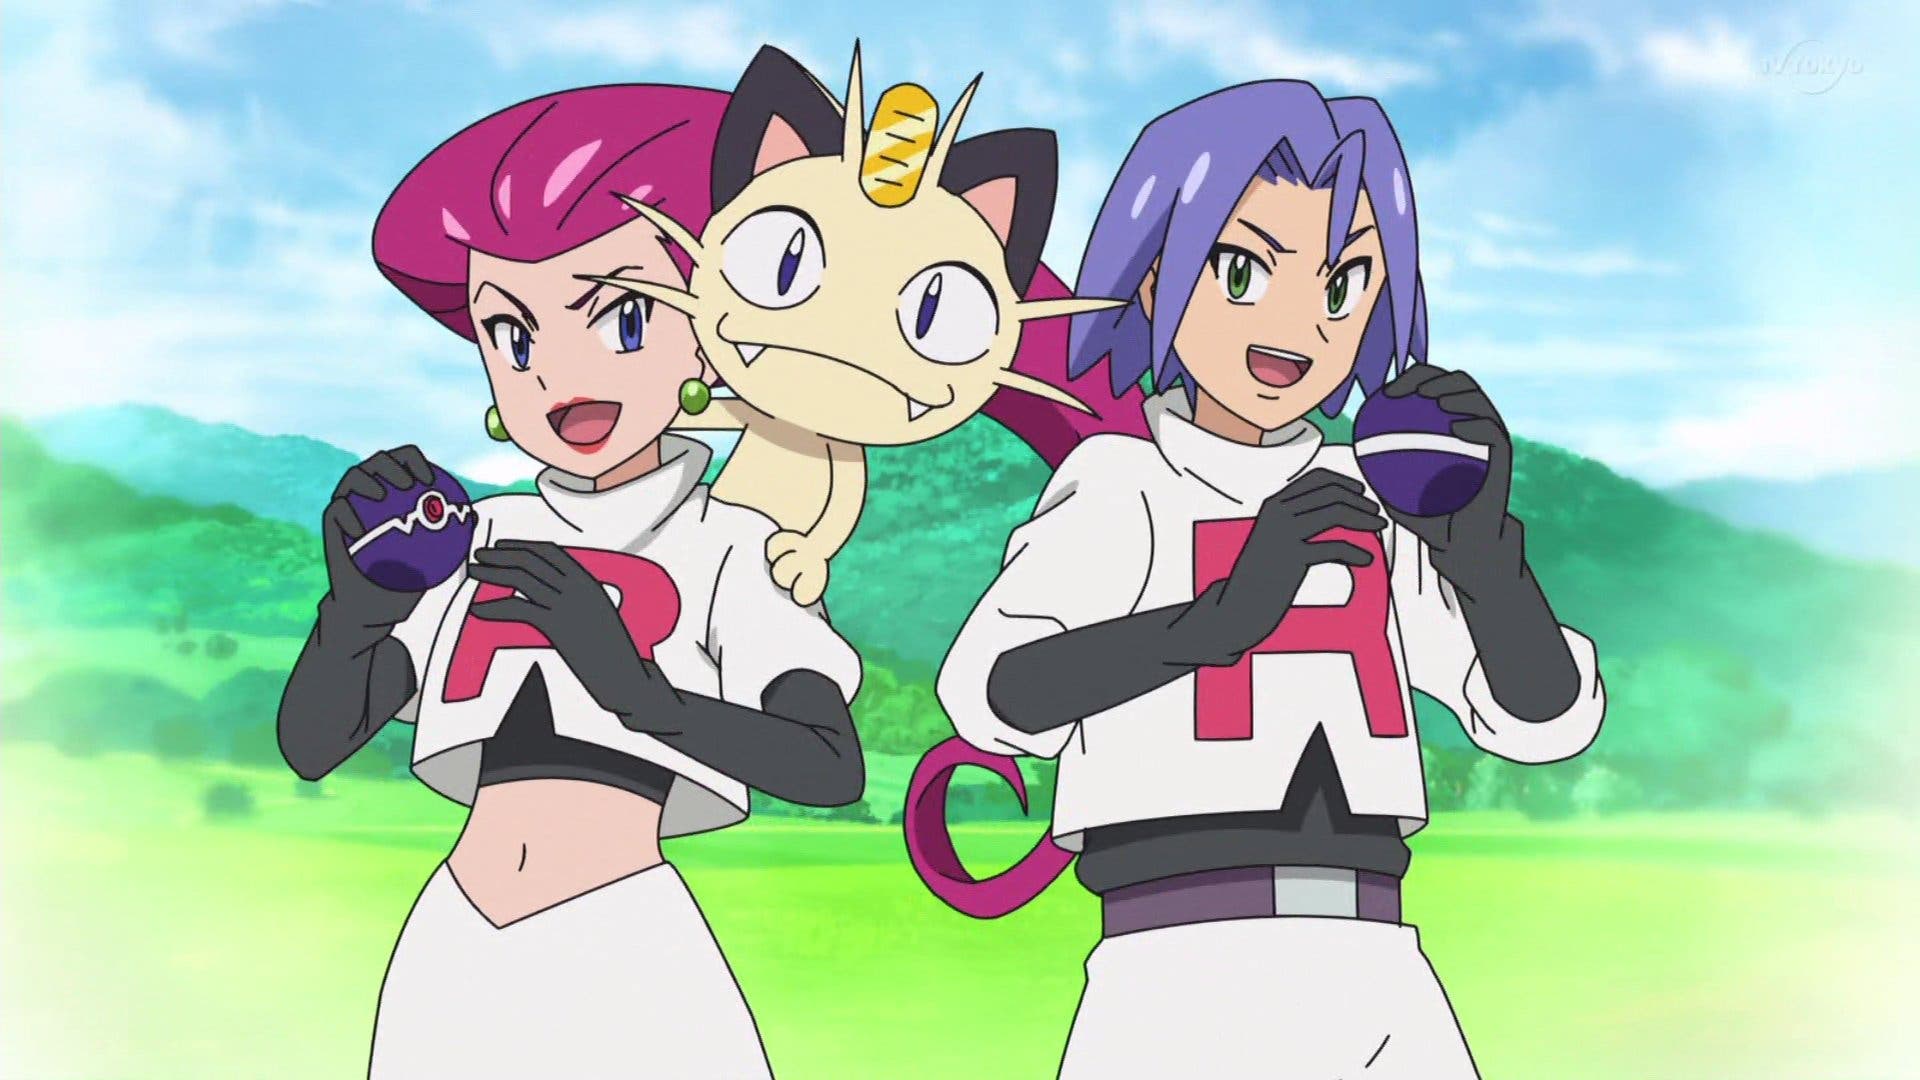 Confirmadas novedades del Team Rocket en el último episodio de Ash en el anime Pokémon